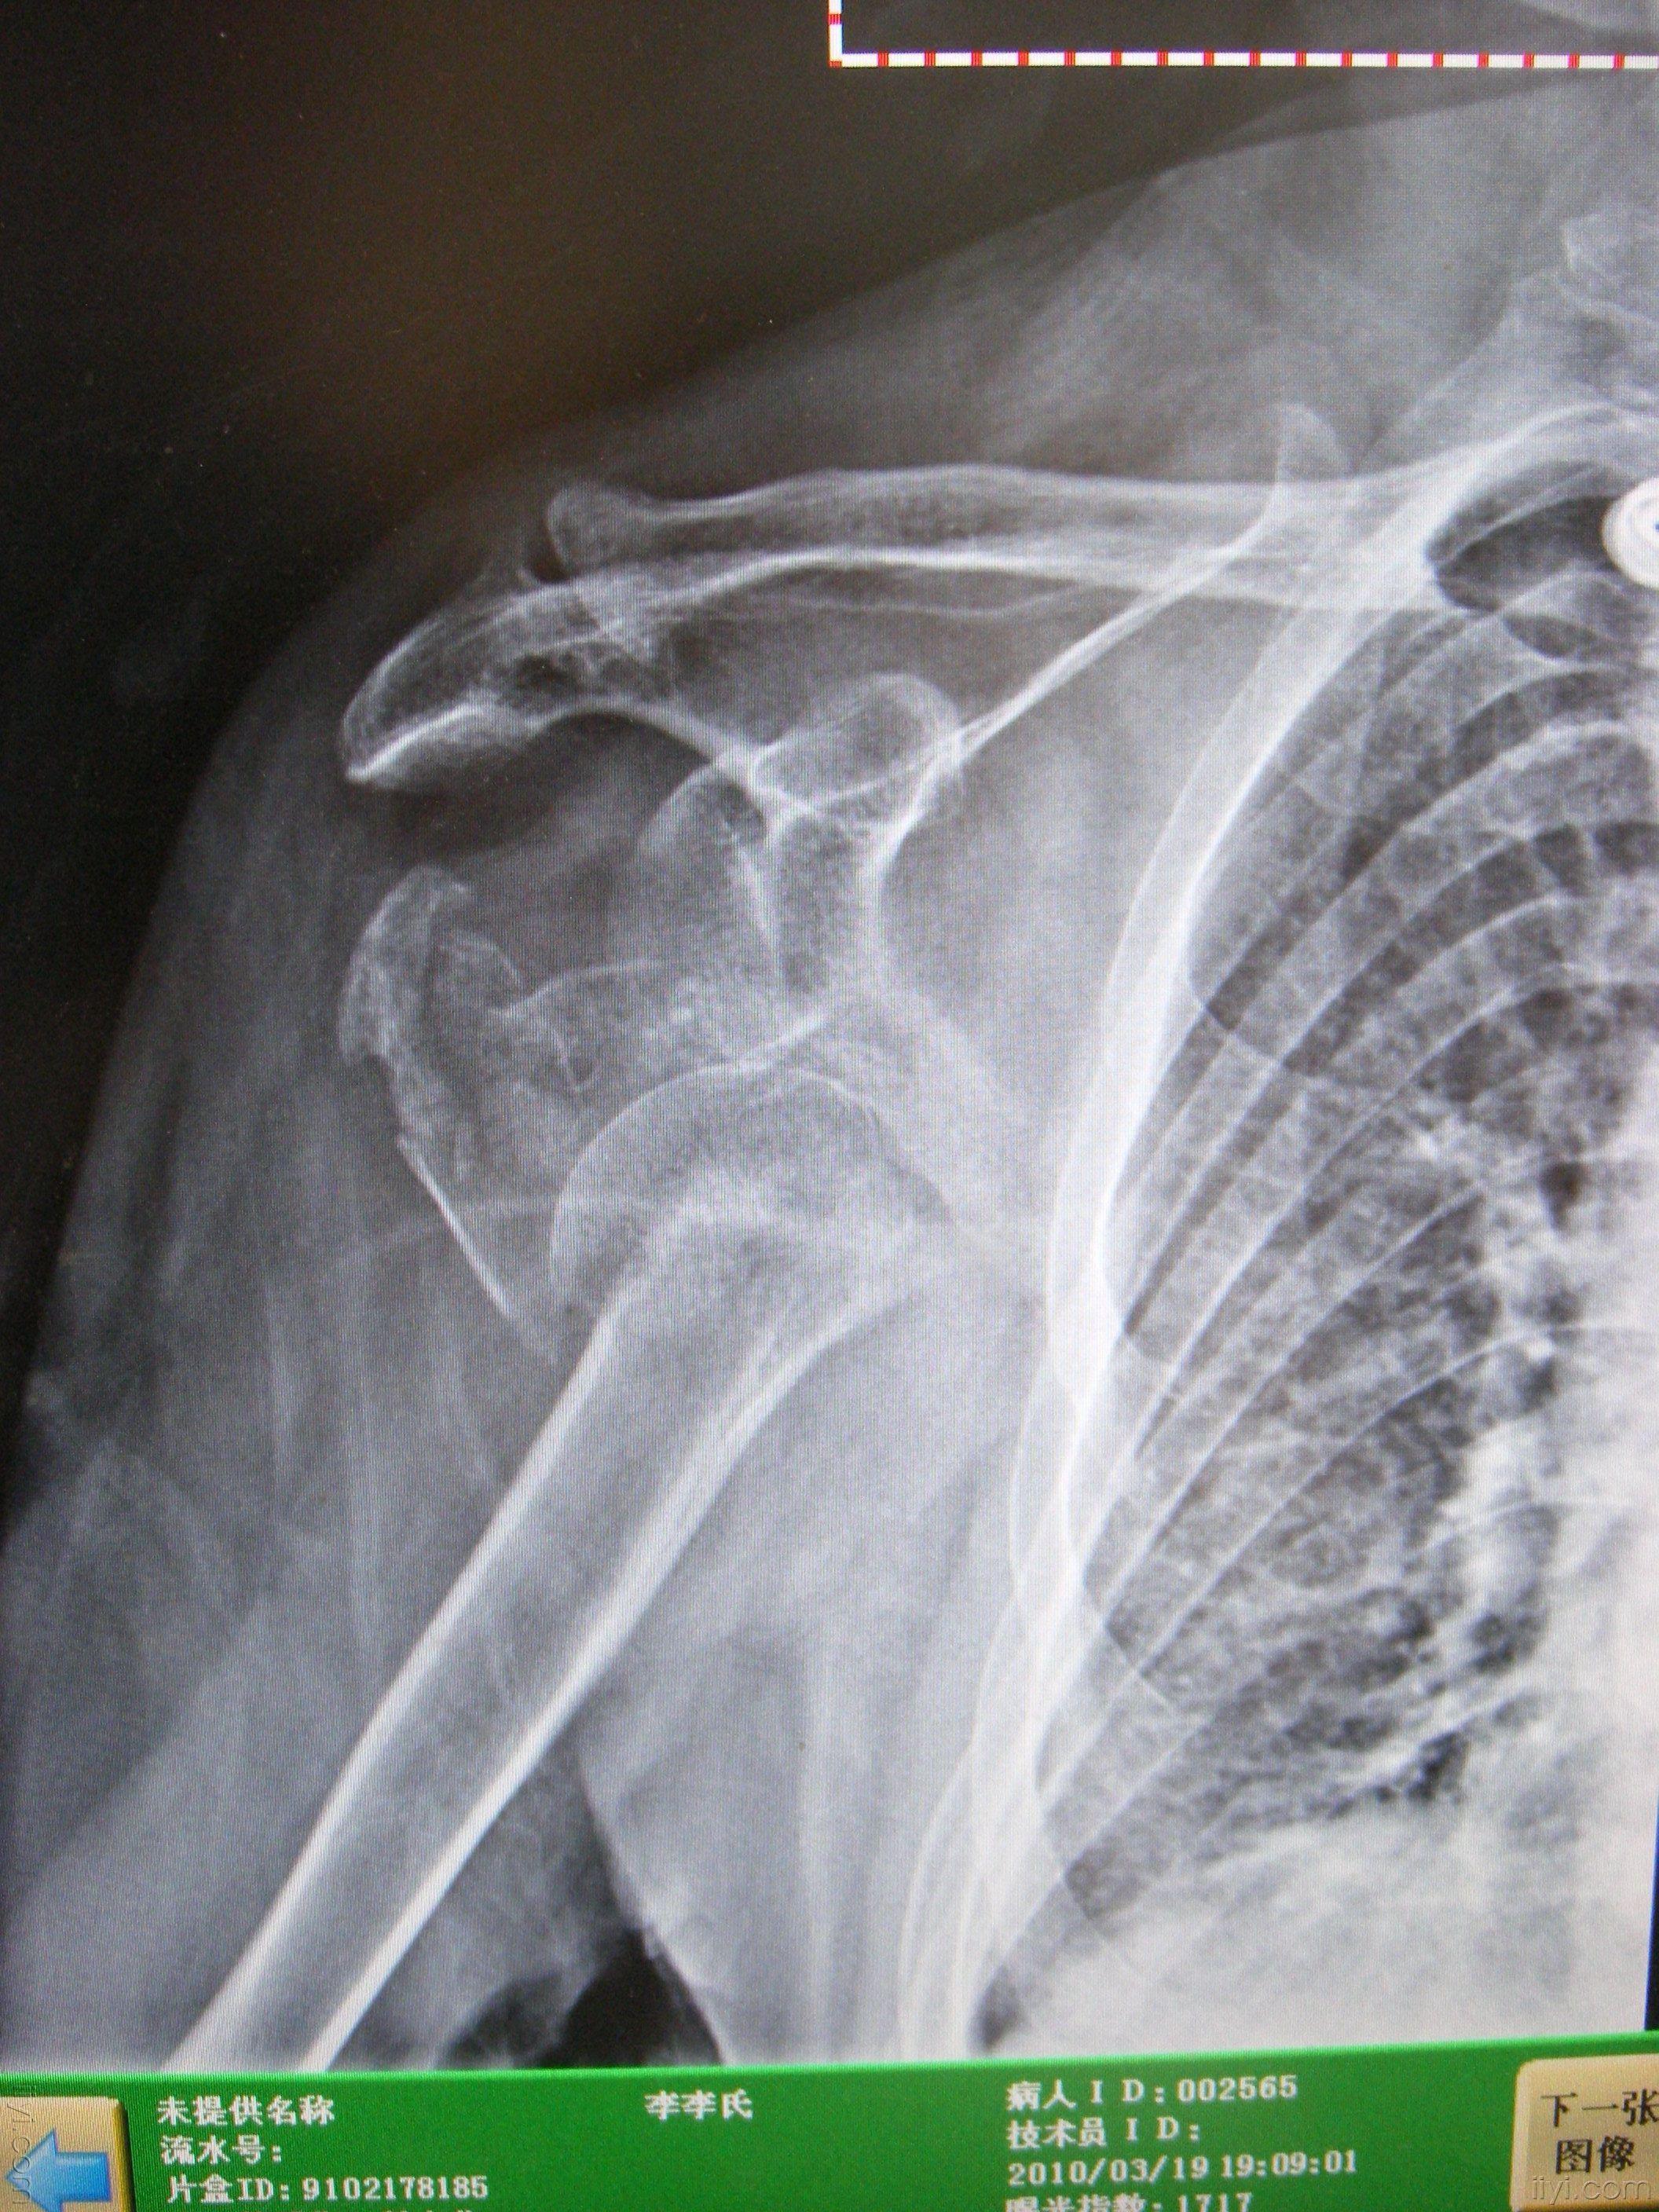 病例14 肩关节脱位-X线读片-医学